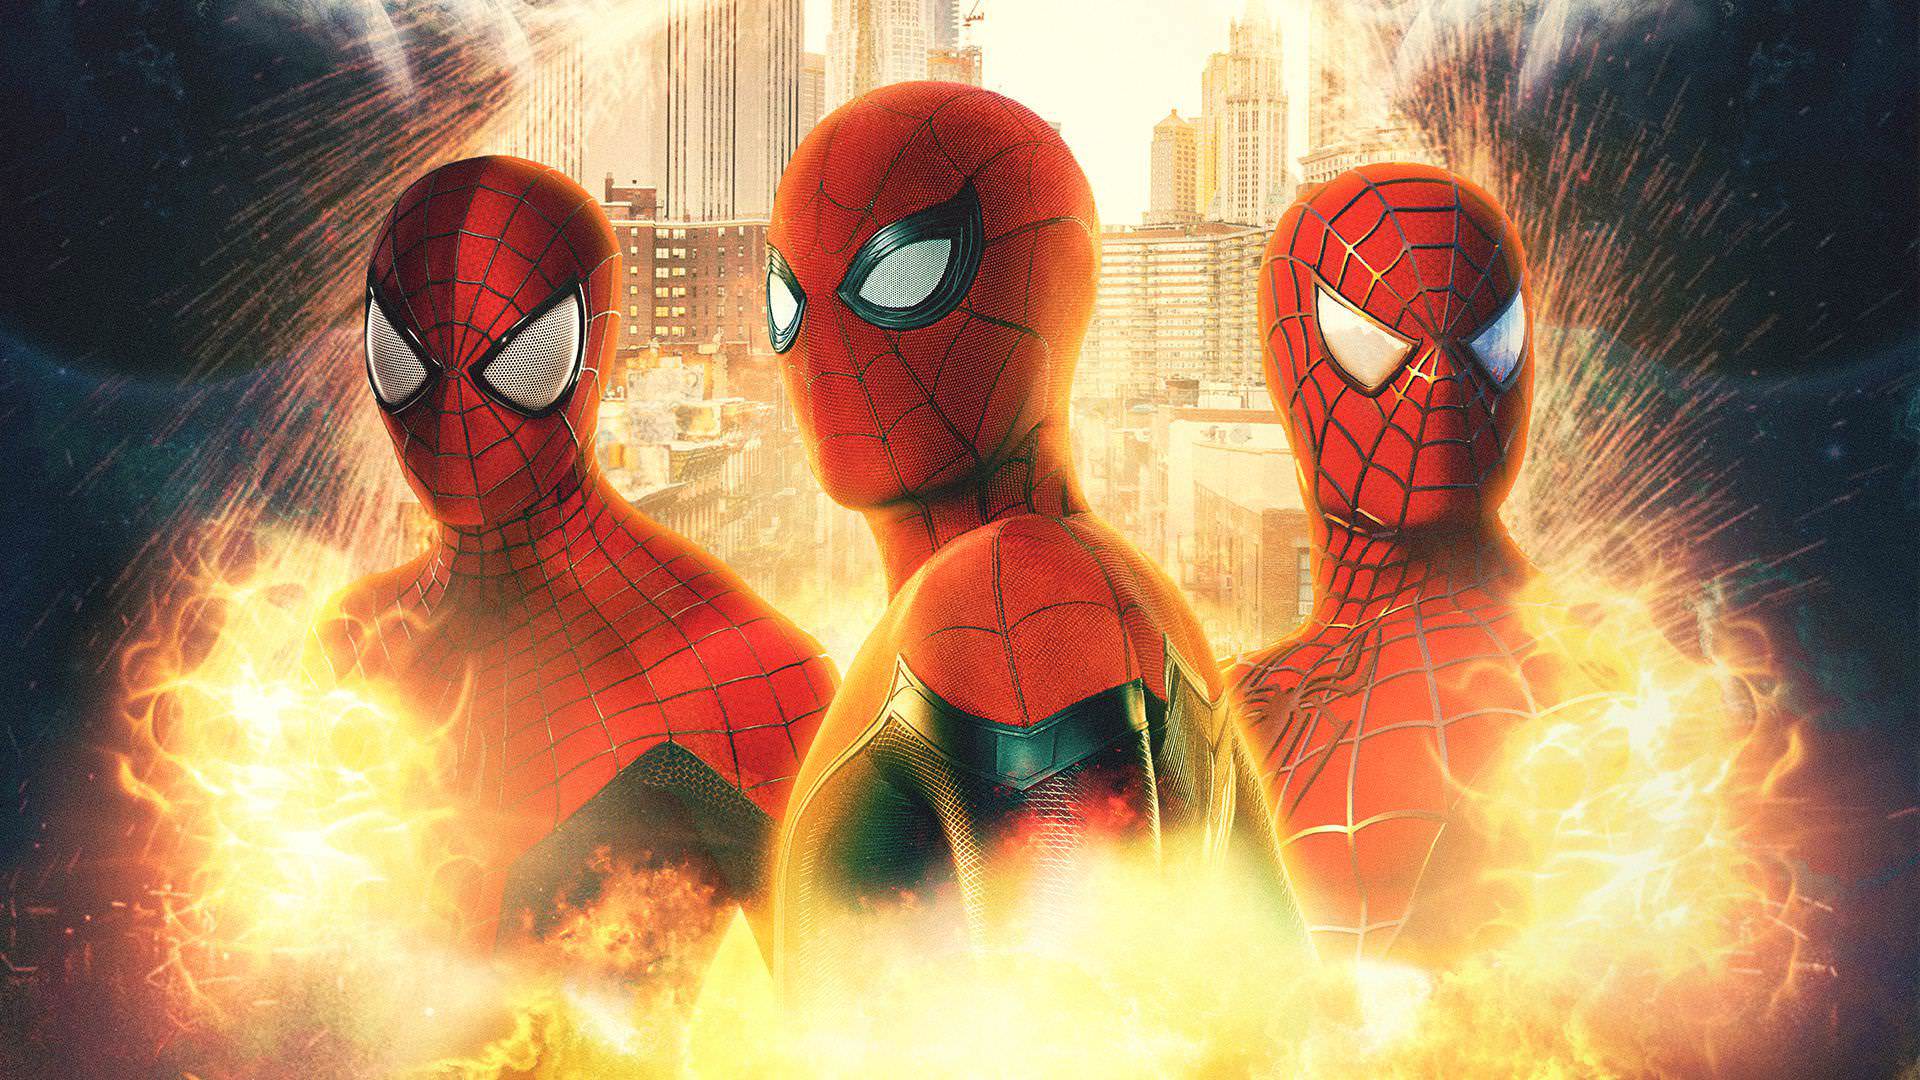 سه نسخه متفاوت مرد عنکبوتی در فن آرت فیلم Spider-Man: No Way Home